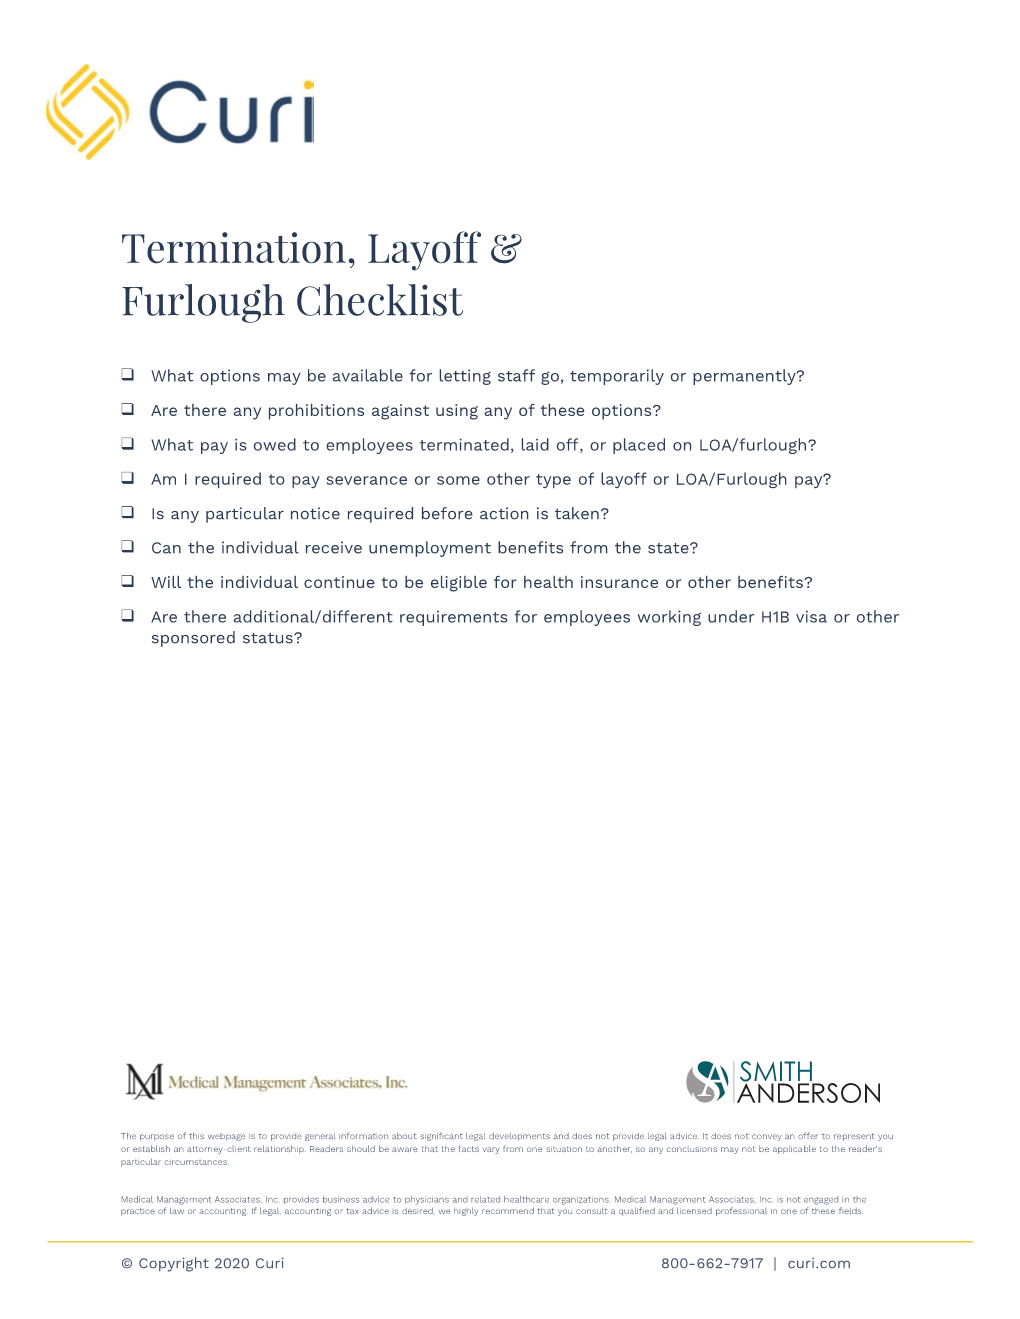 Termination, Layoff & Furlough Checklist